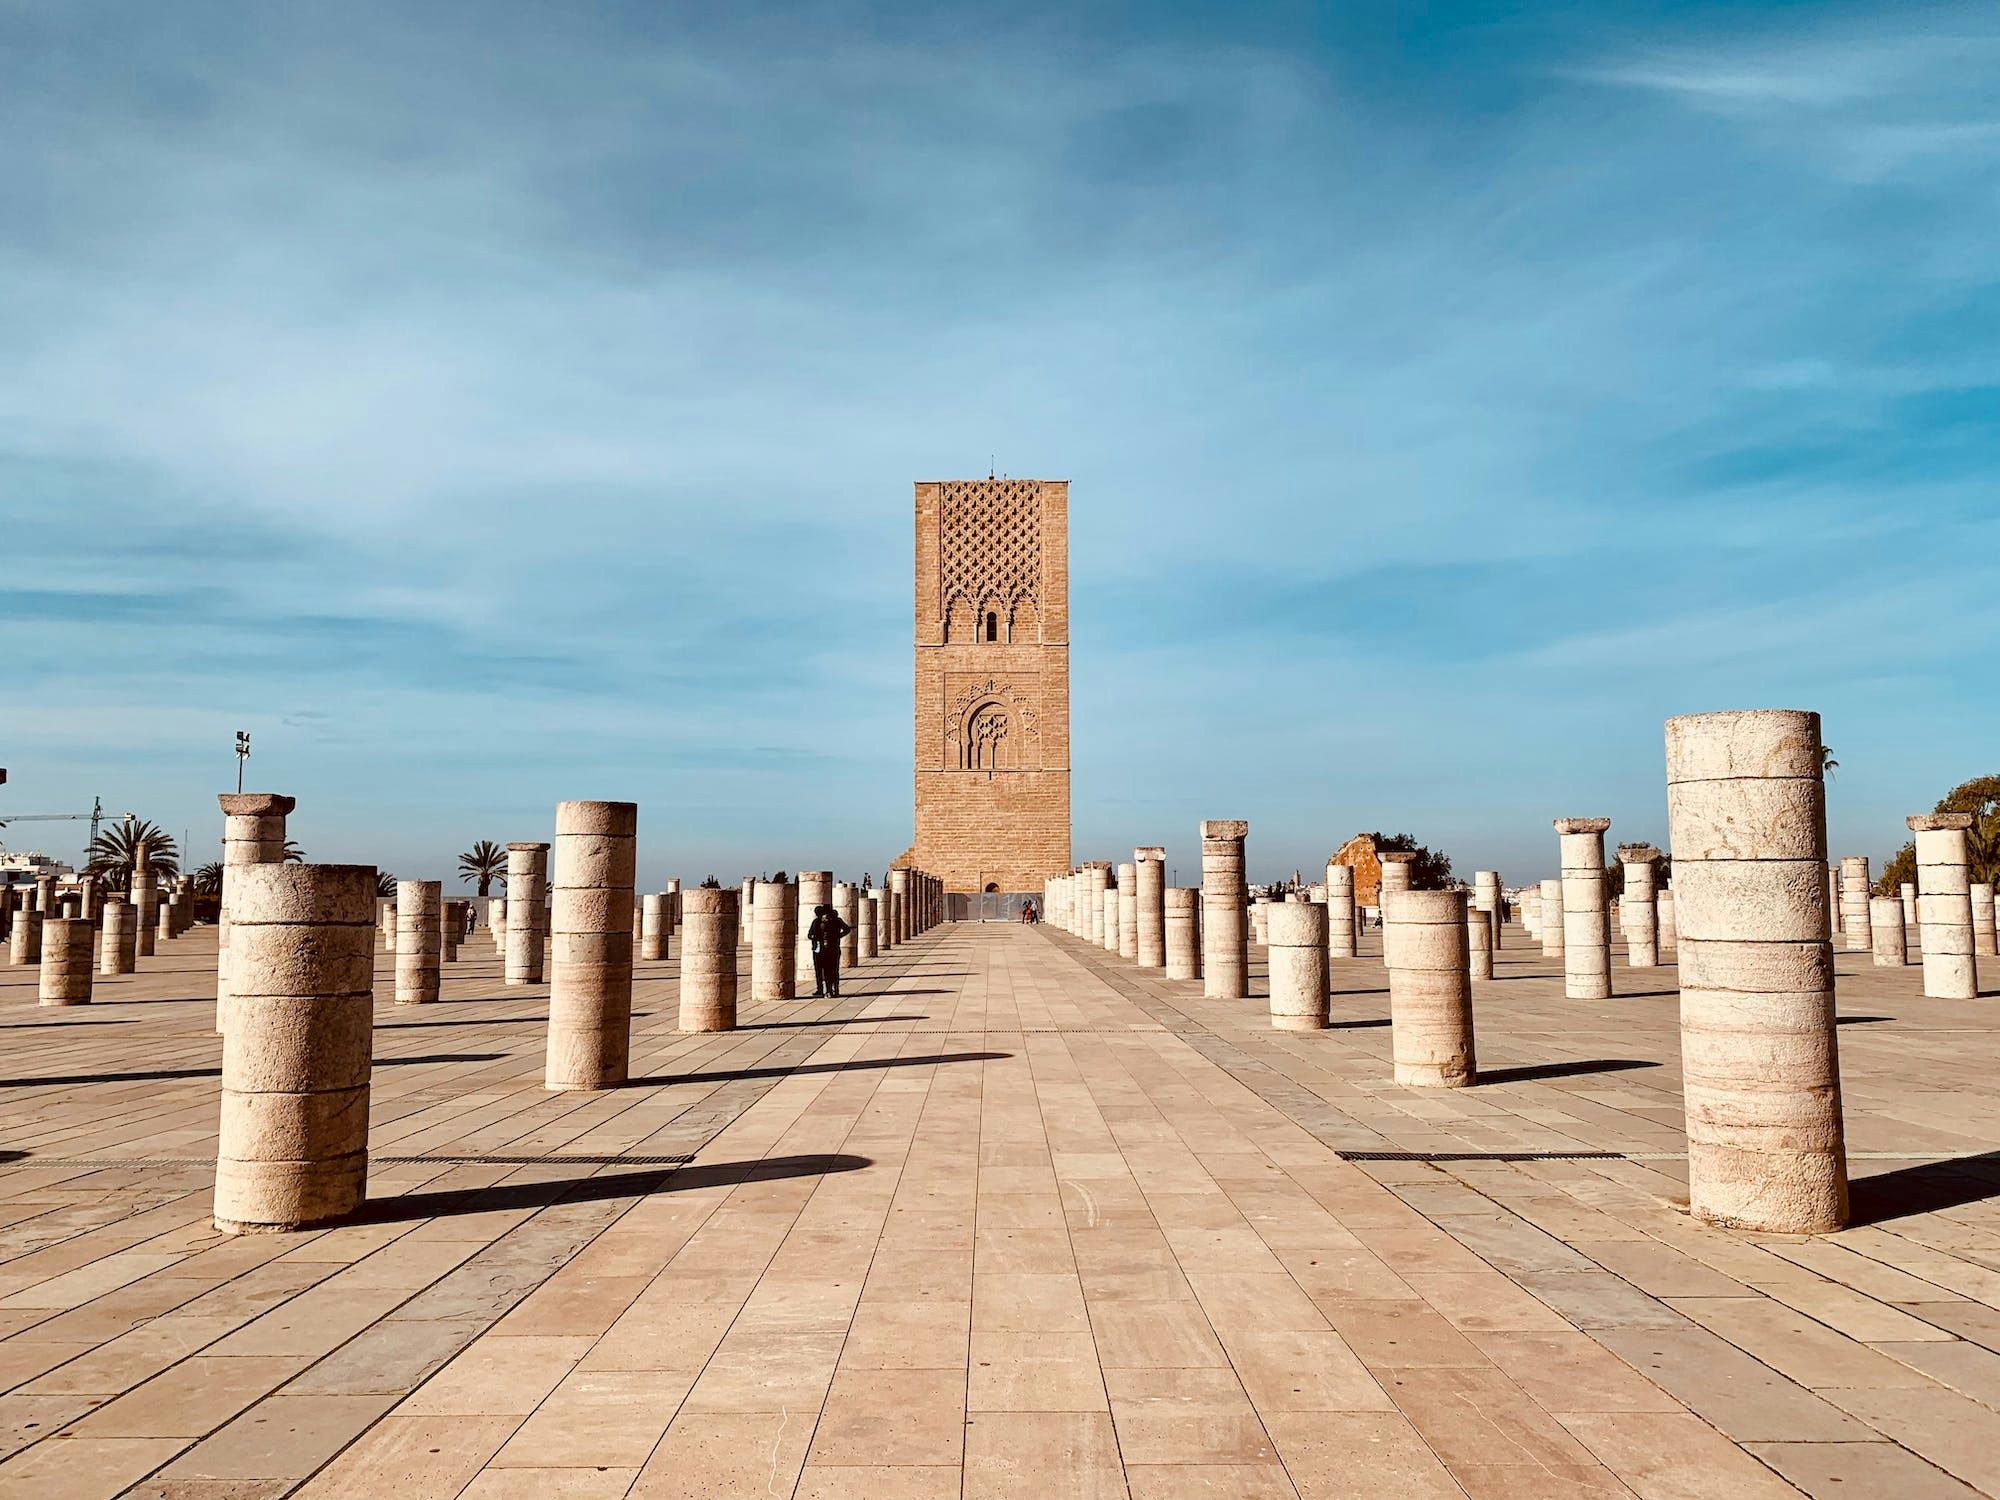 The city of Rabat